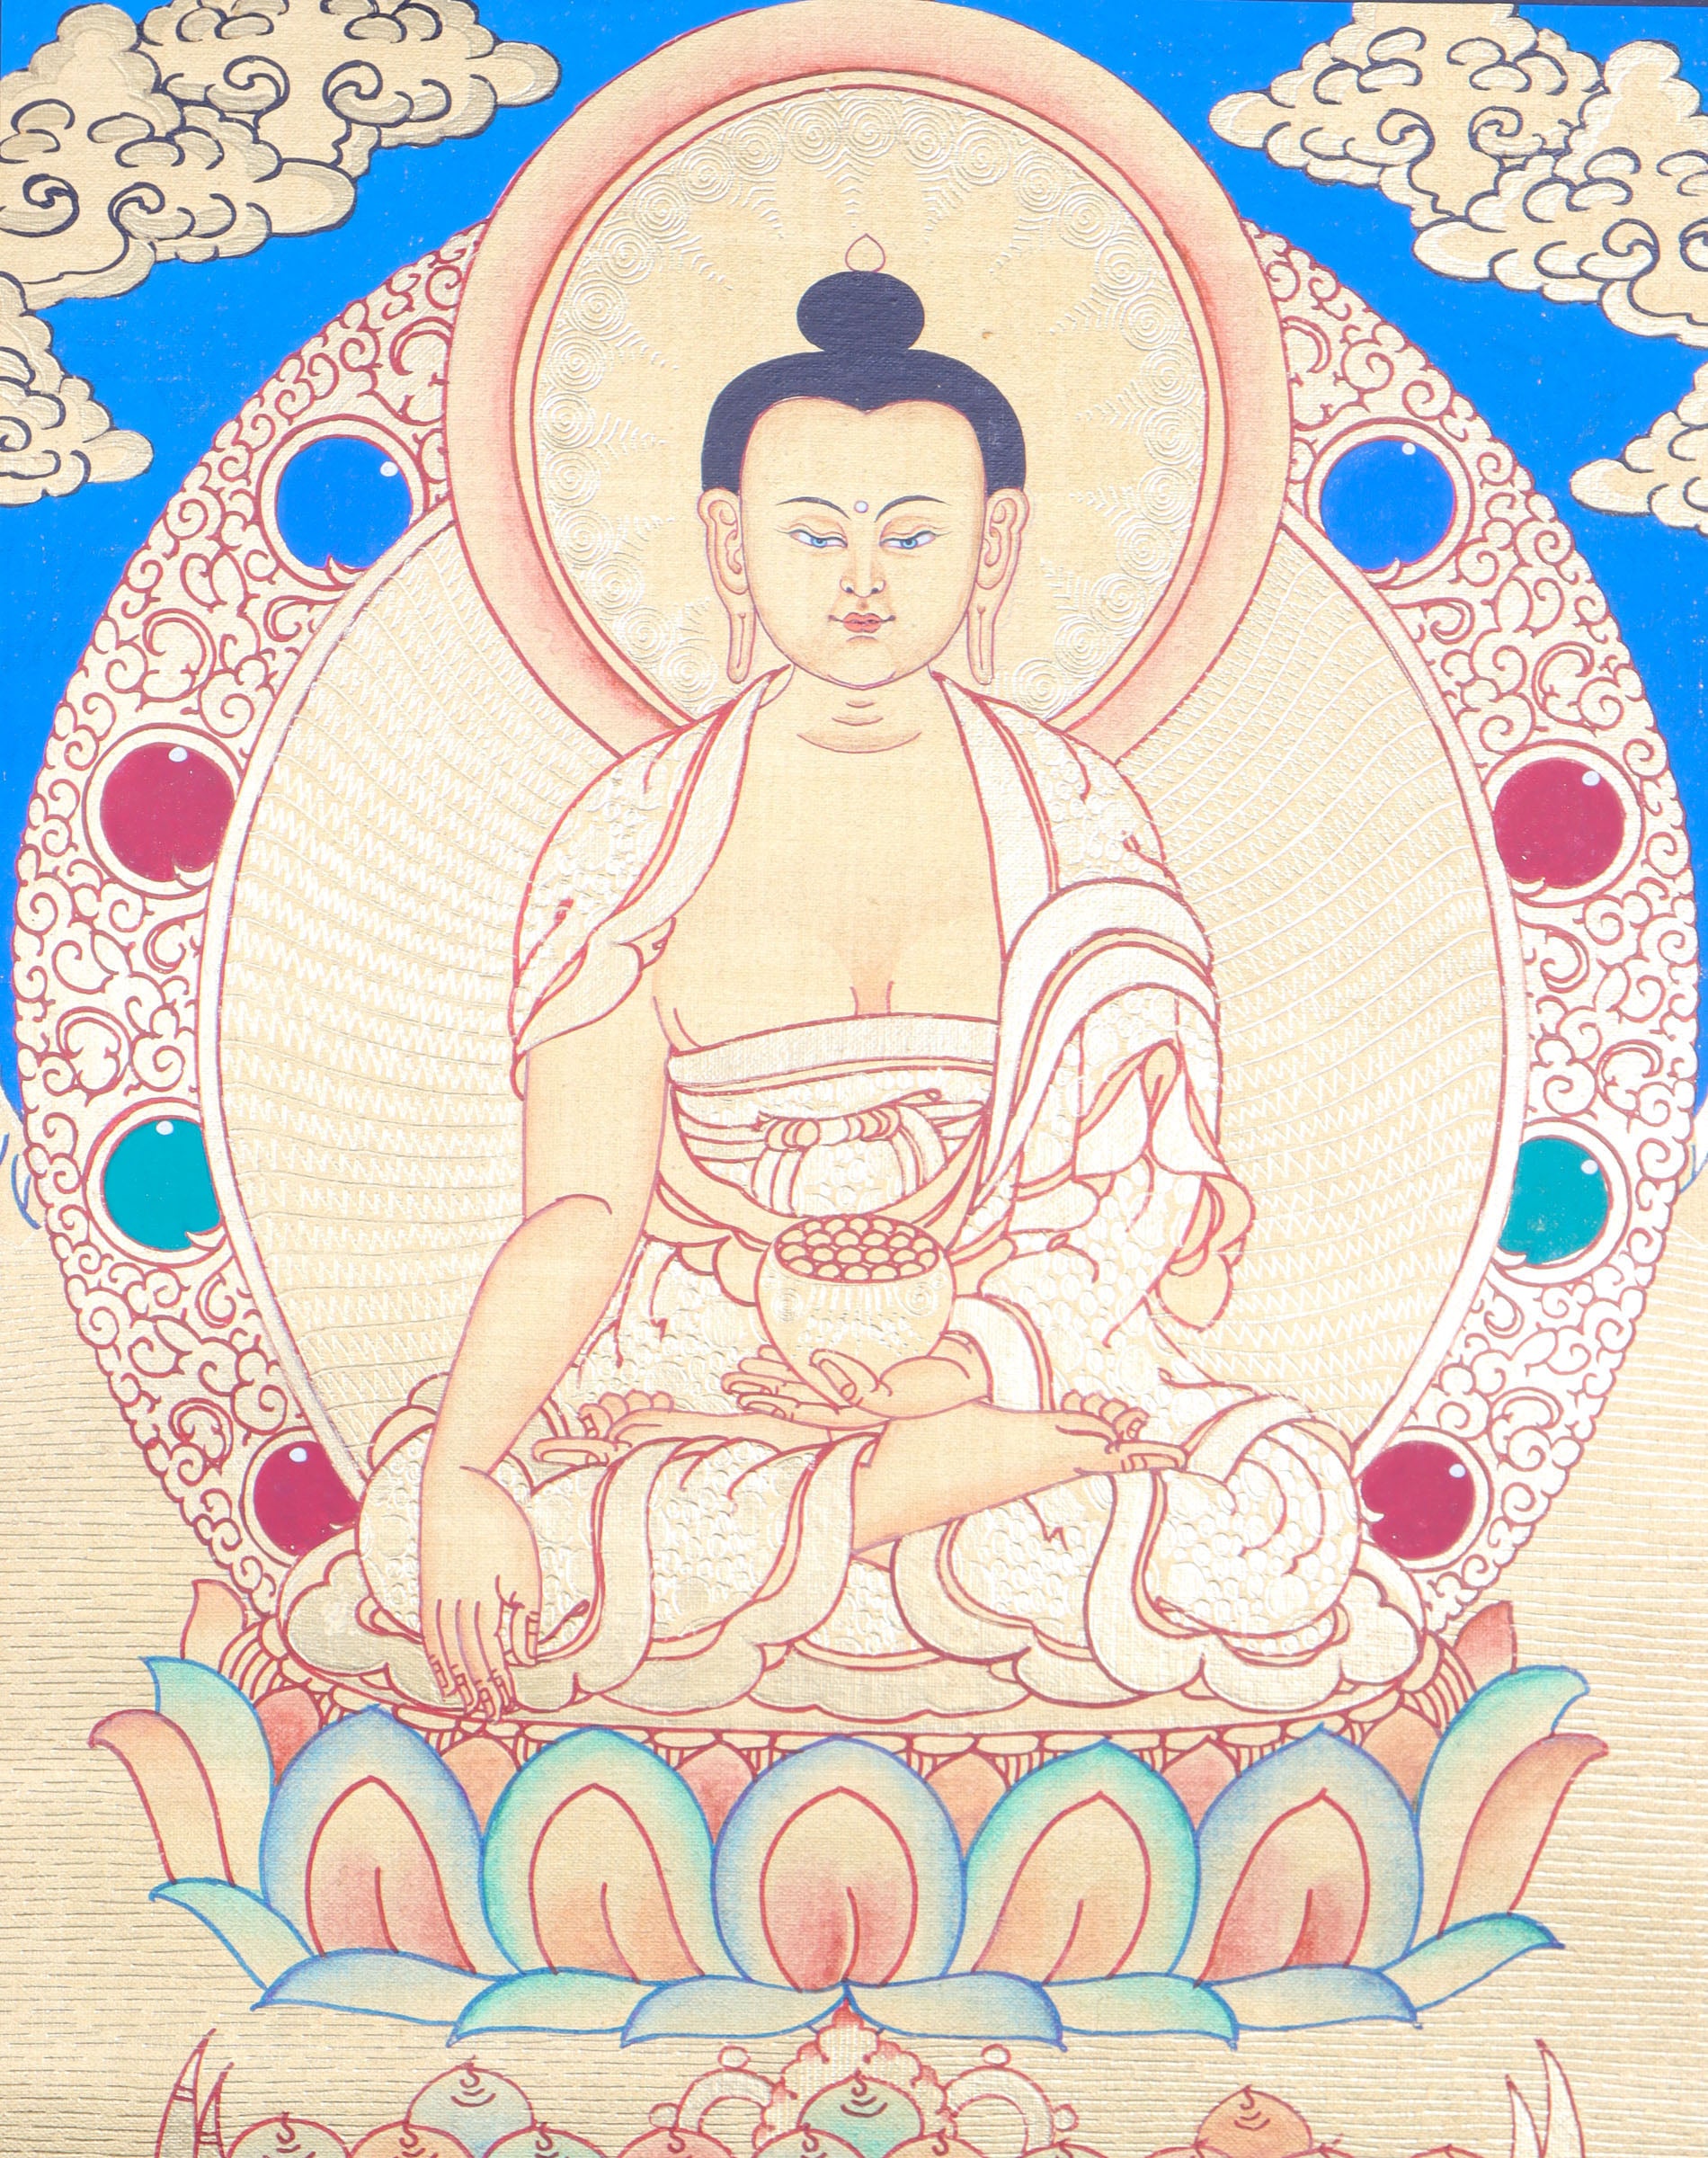 Shakyamuni Buddha Thangka promotes peace, devotion, and self-awareness.